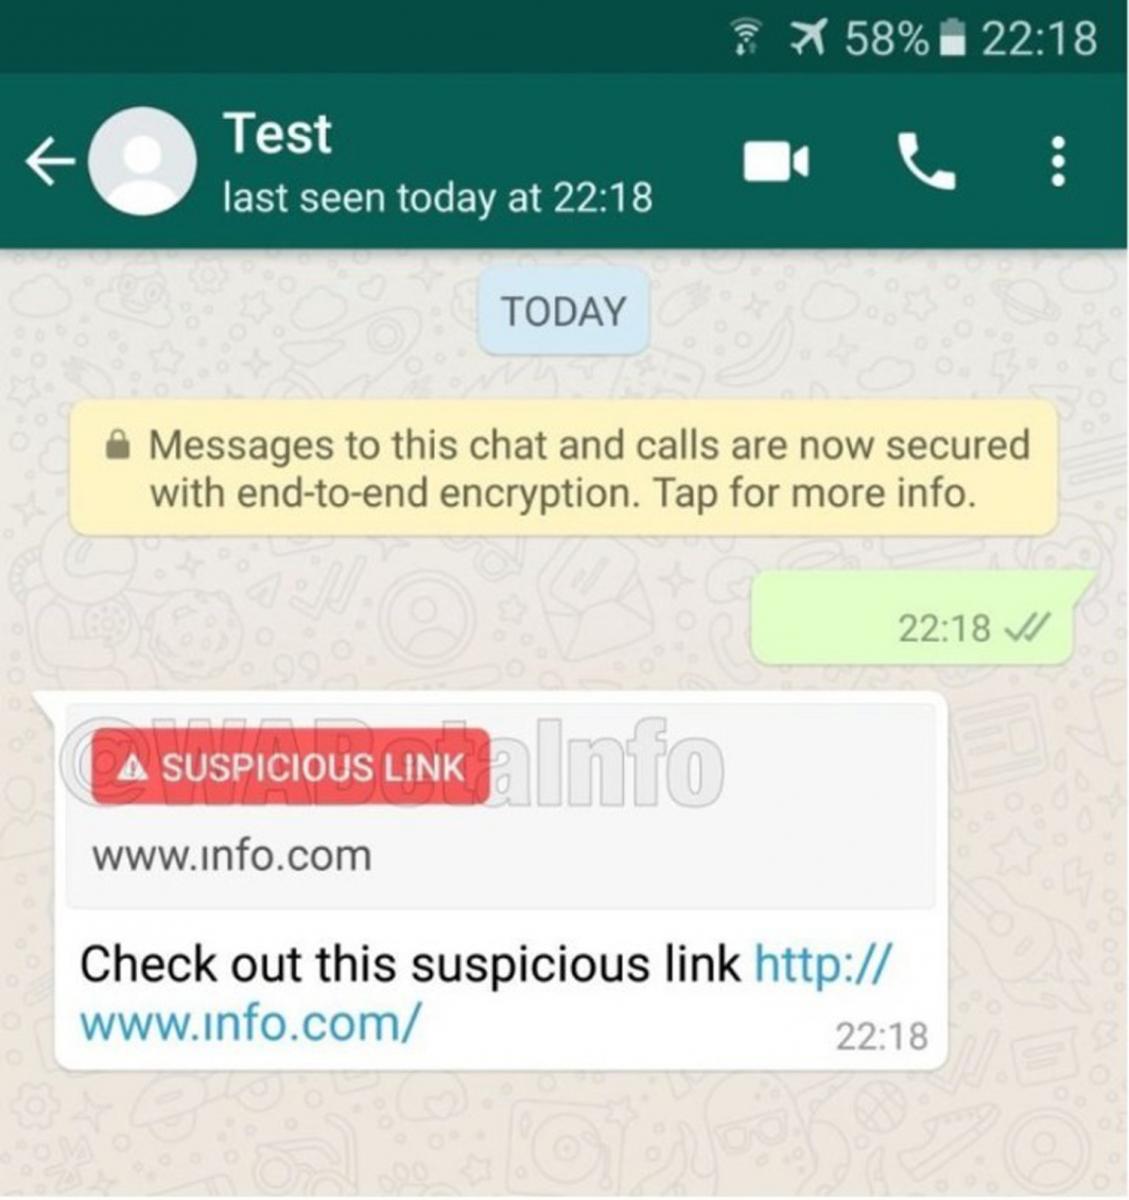 Lo nuevo de Whatsapp: ahora te avisa si un link es sospechoso